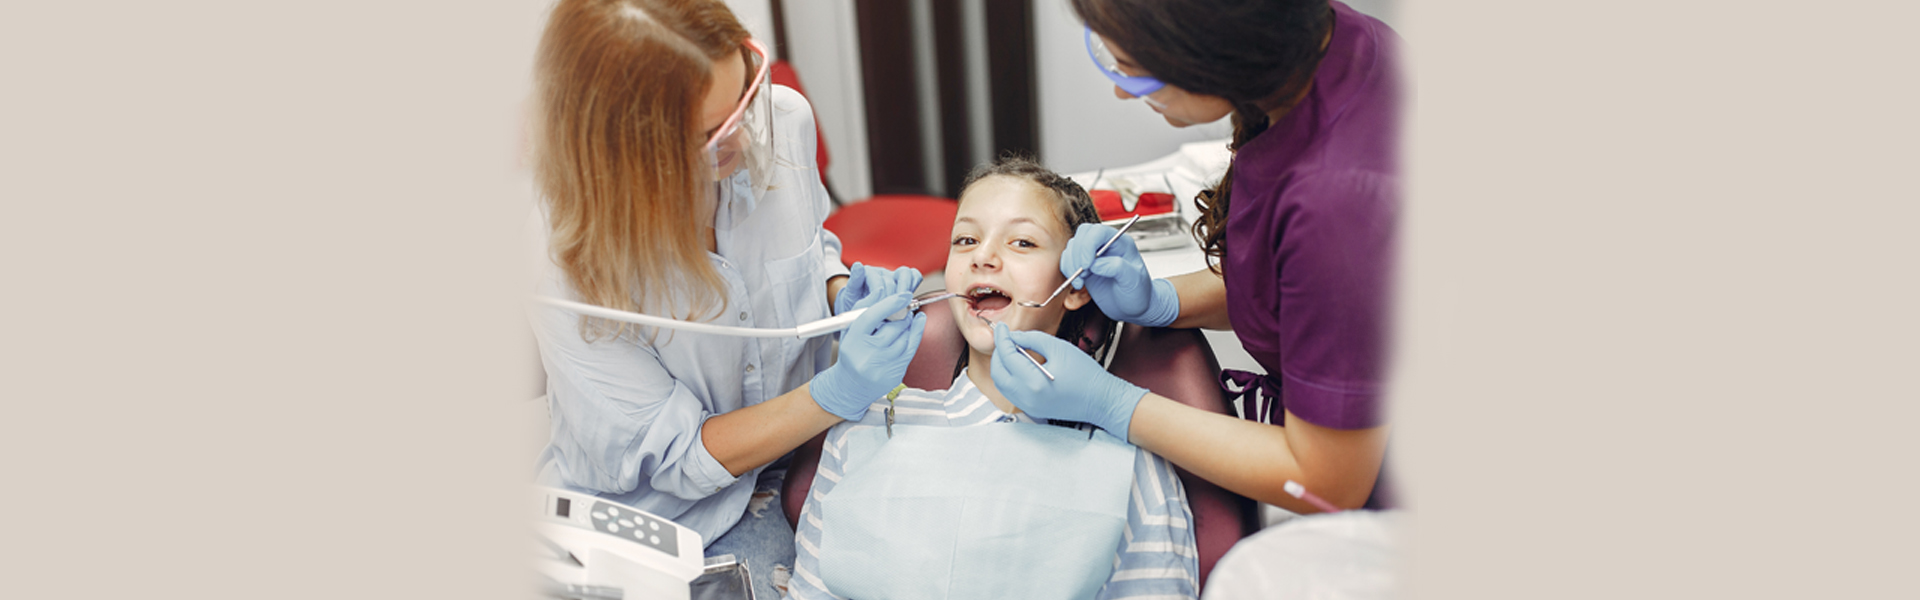 Pediatric Dentistry and Dental Fillings : Managing Cavities in Children